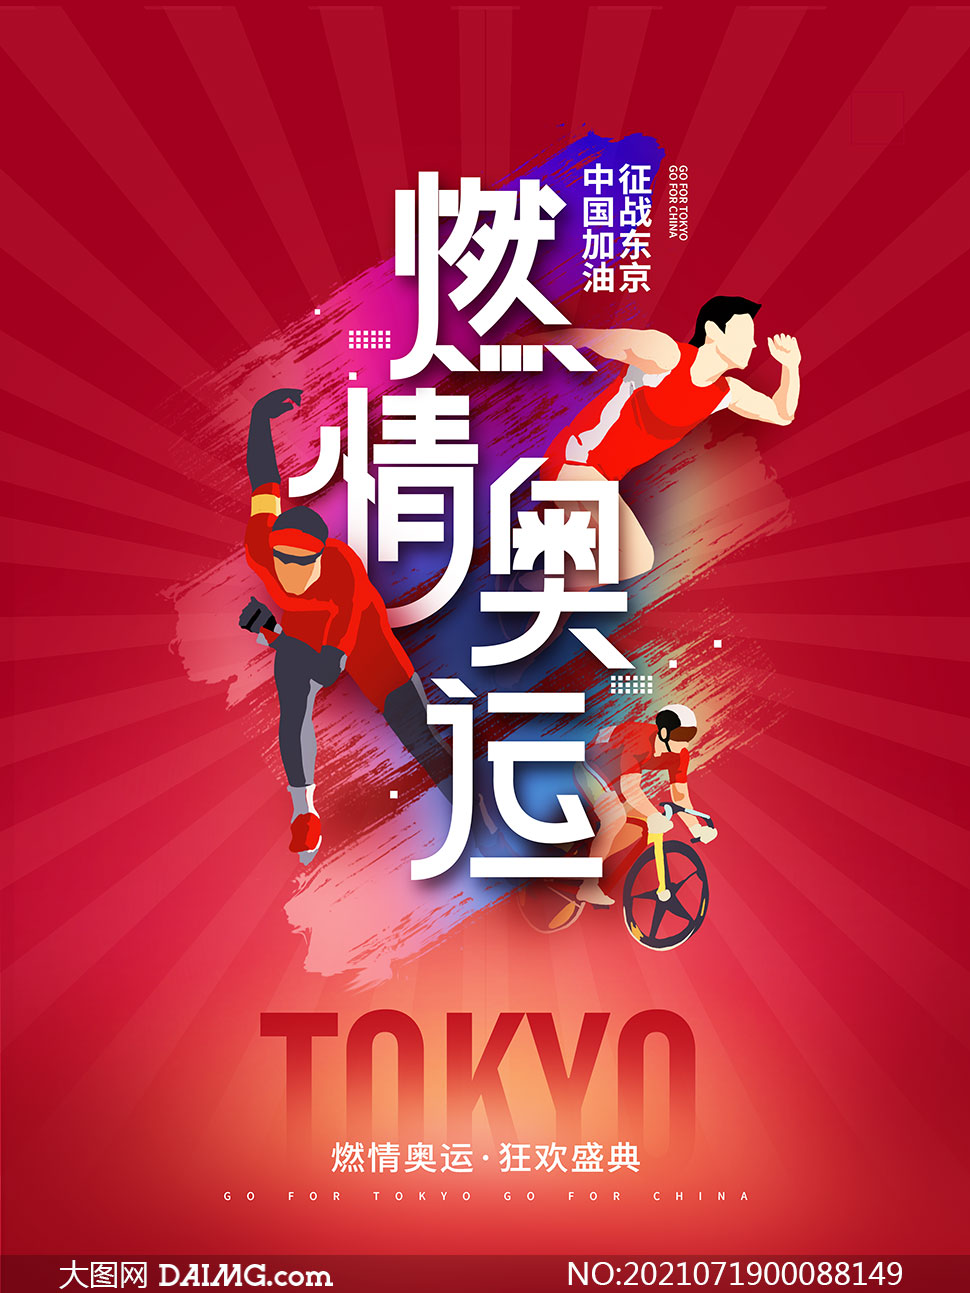 激情奥运中国加油宣传海报psd素材